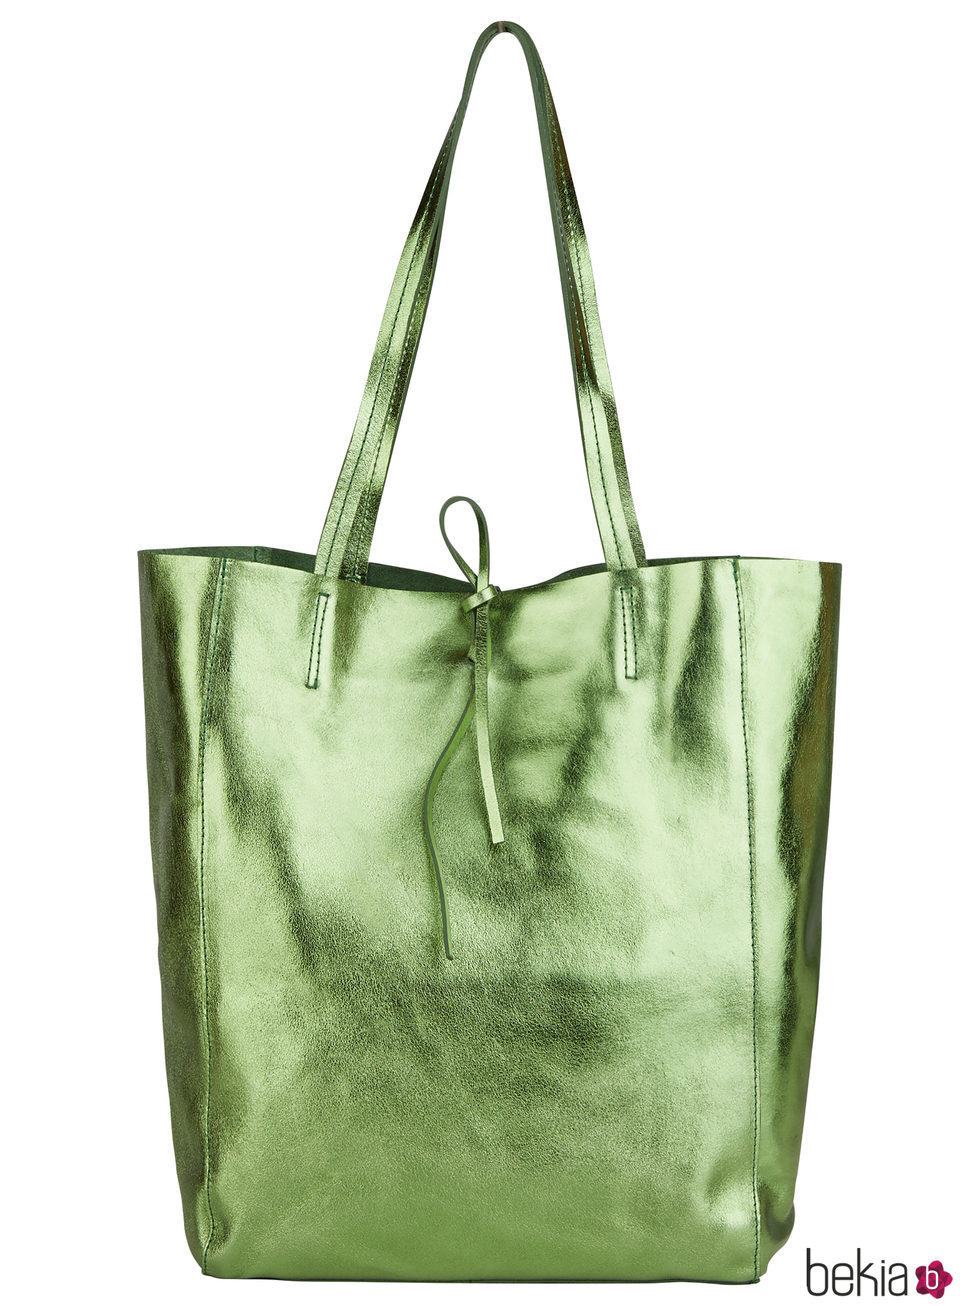 Bolso tipo saco verde metalizado para mujer de la colección de Primavera-Verano 2018 de Esprit